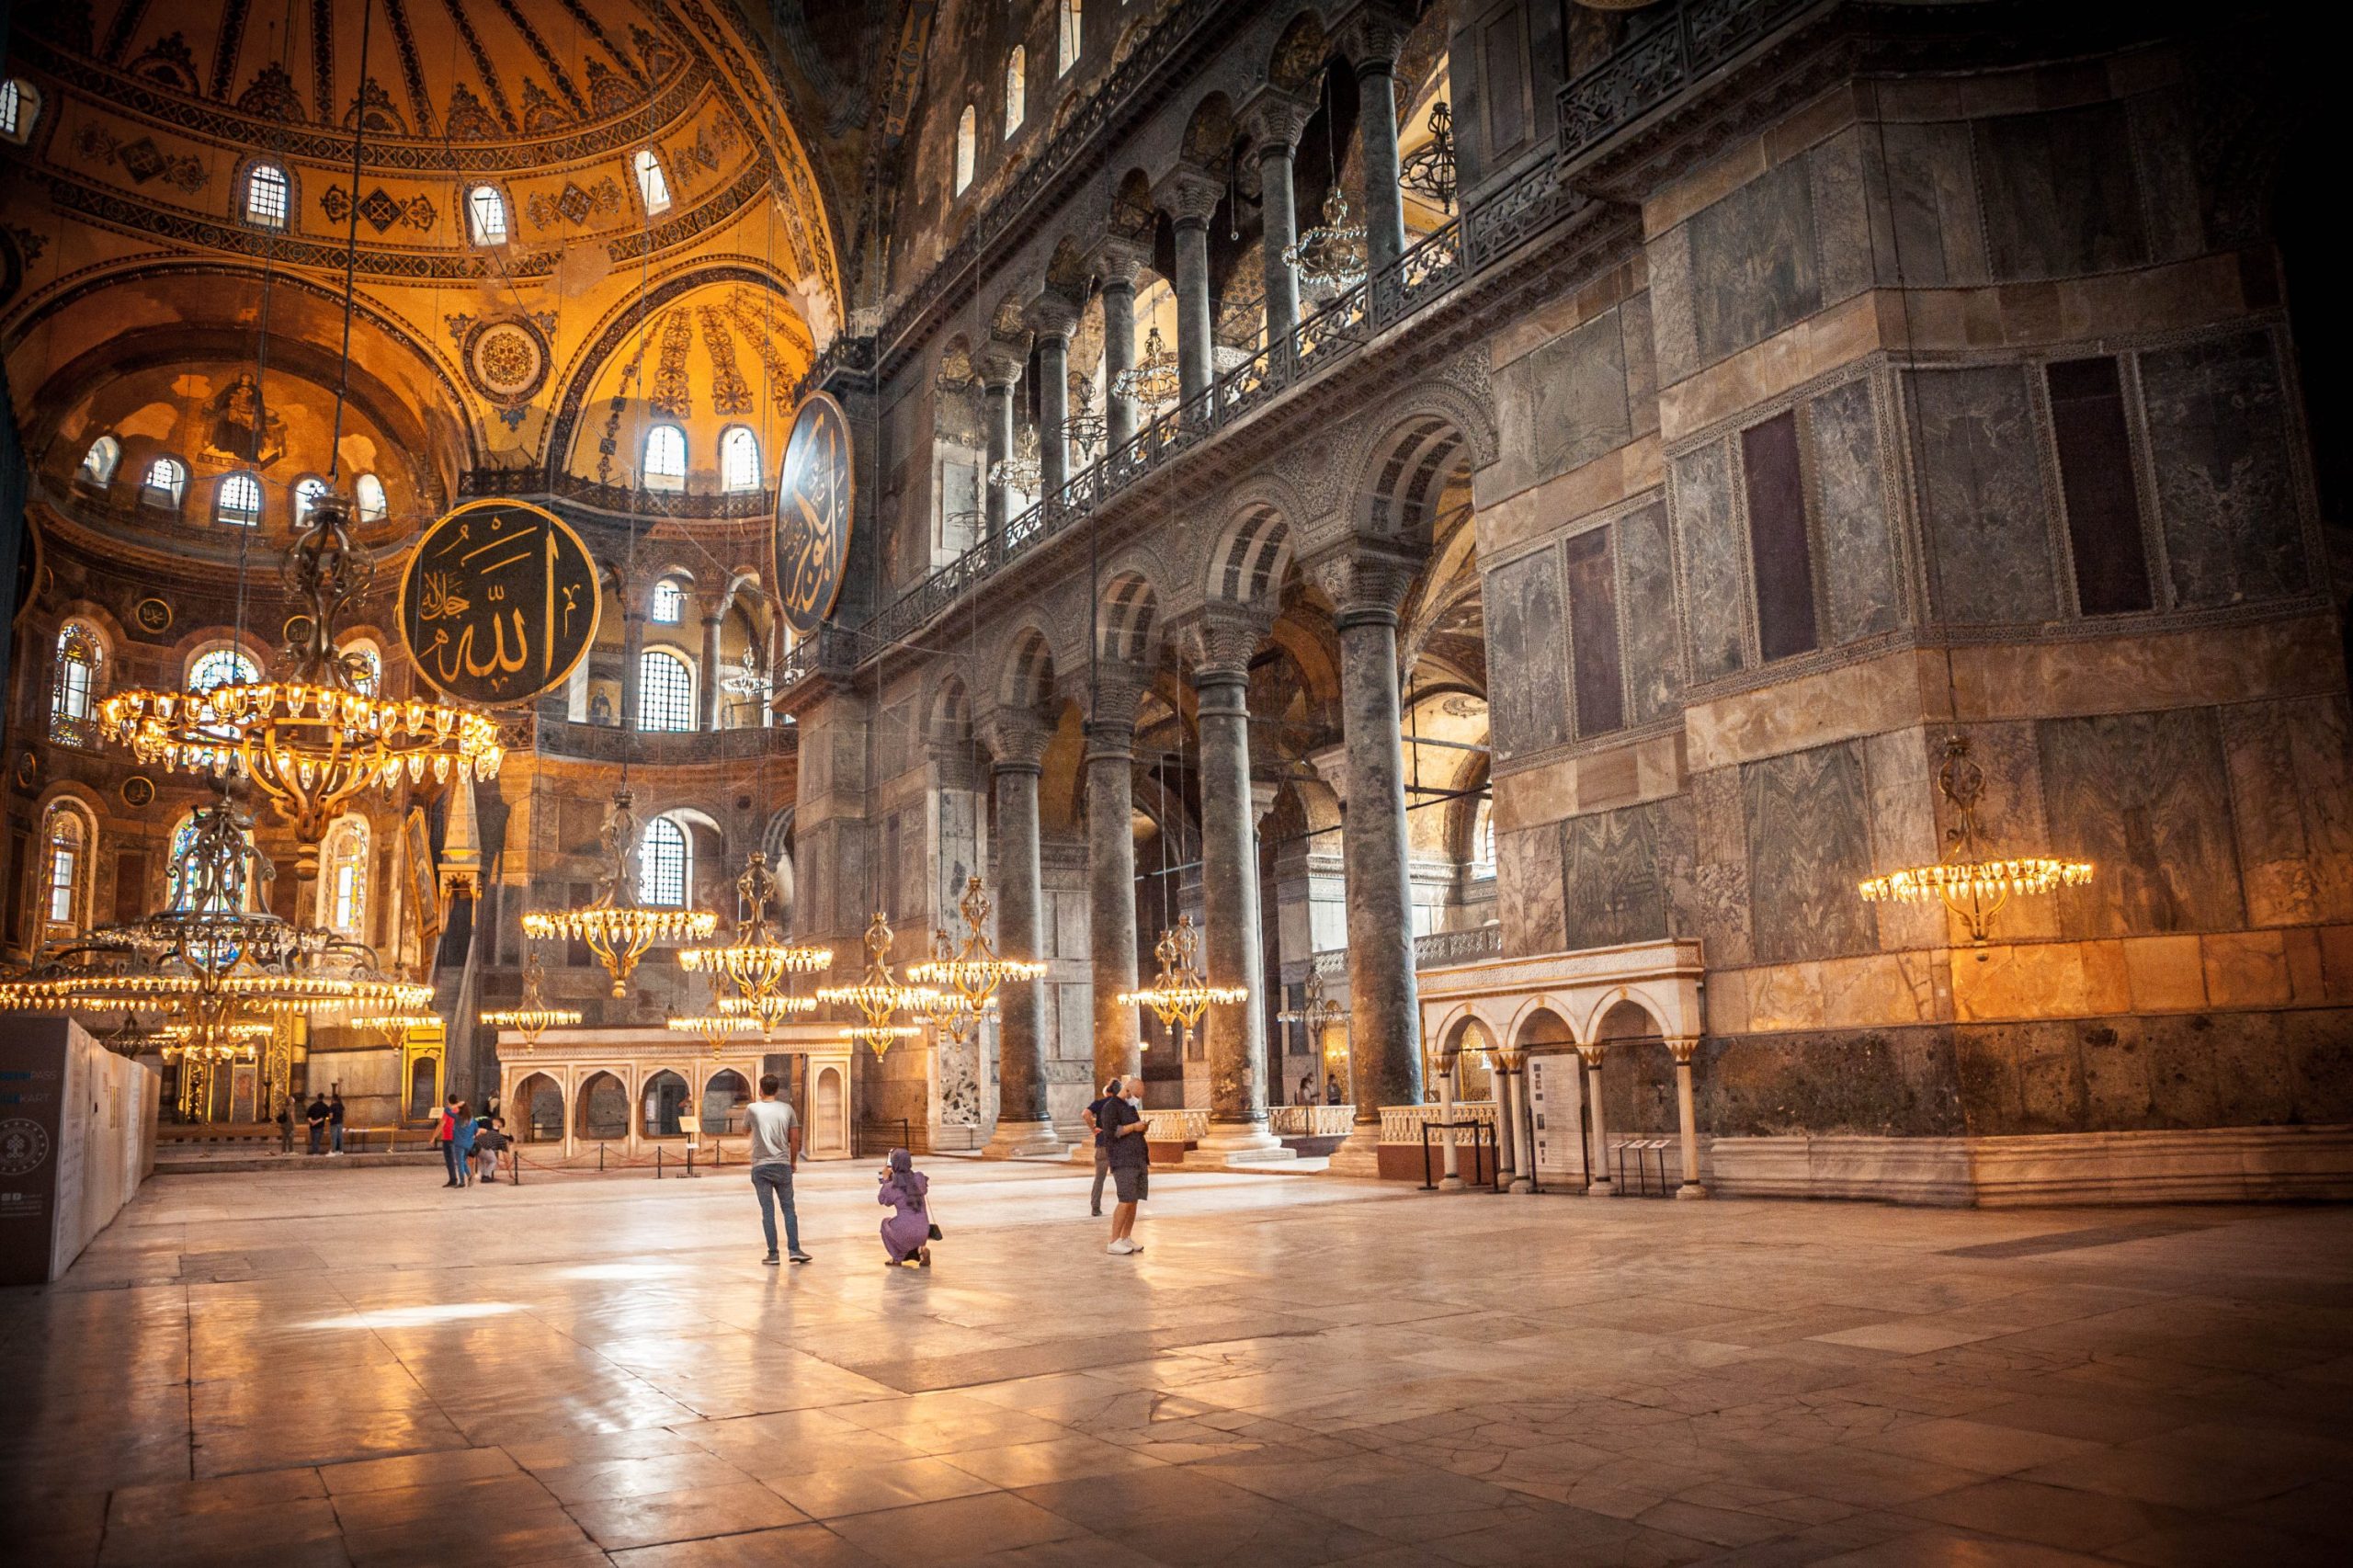 В храме Святой Софии разделят зоны для туристов и молящихся